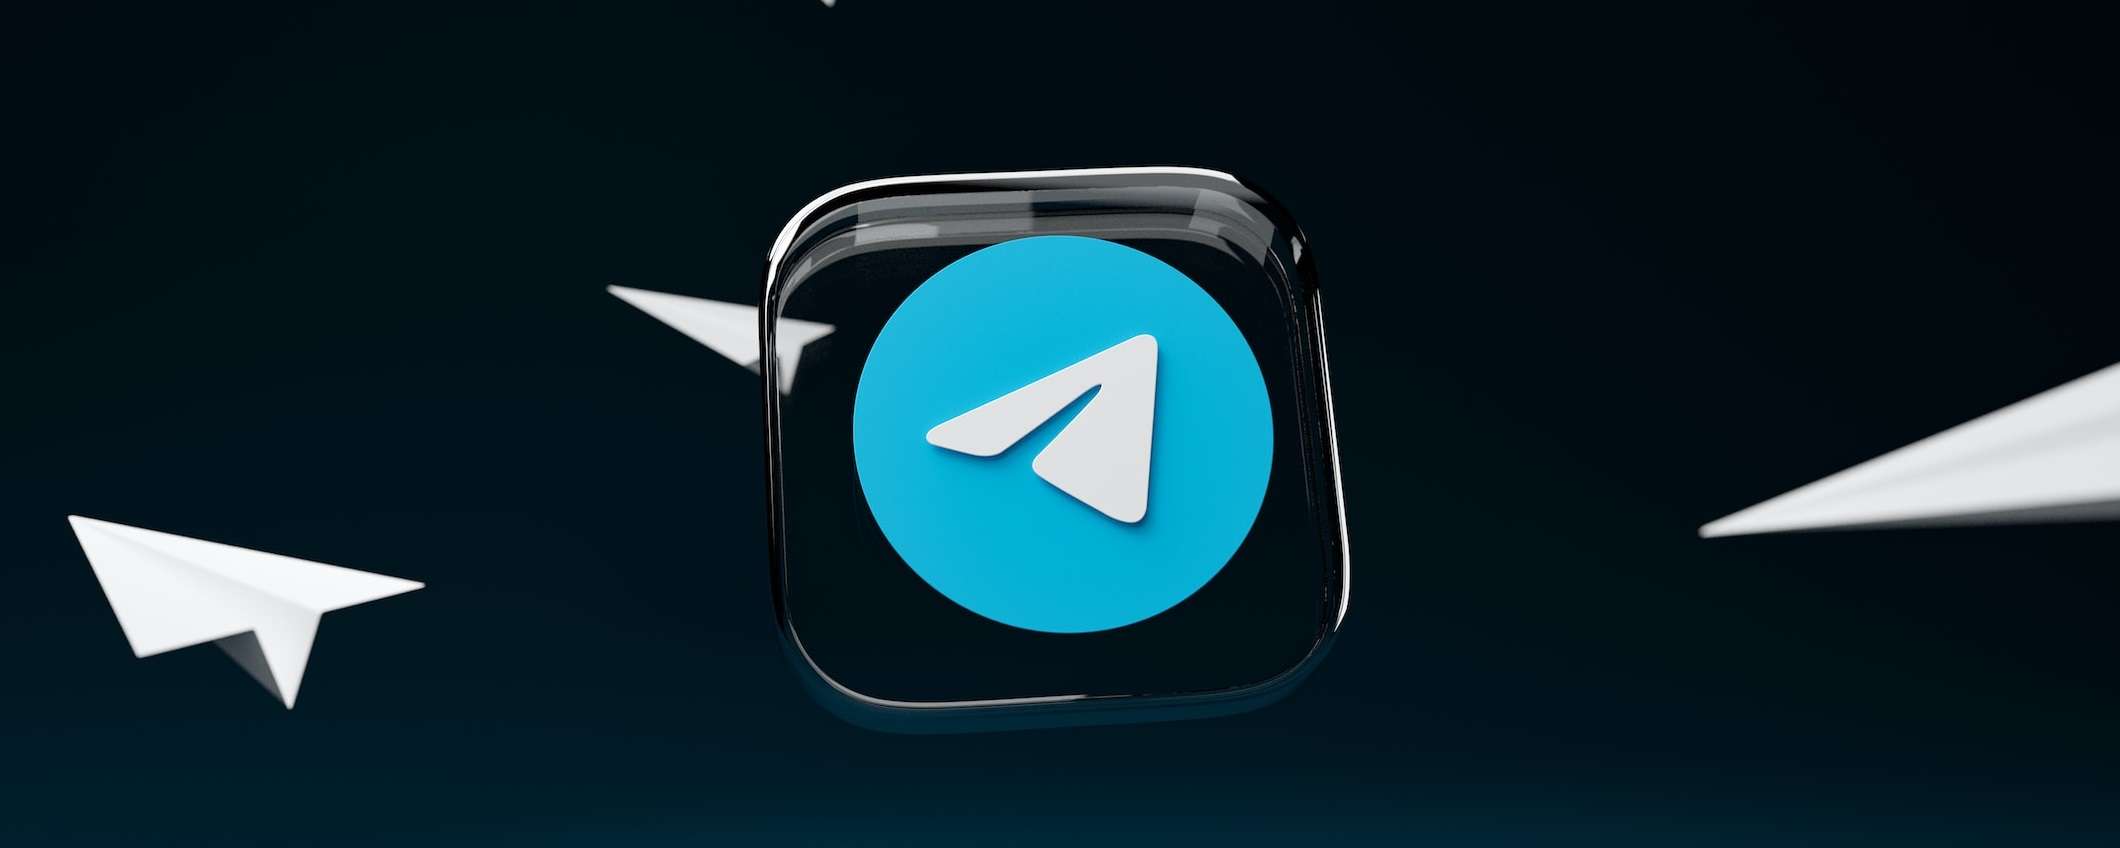 Telegram: come creare una chat anonima velocemente